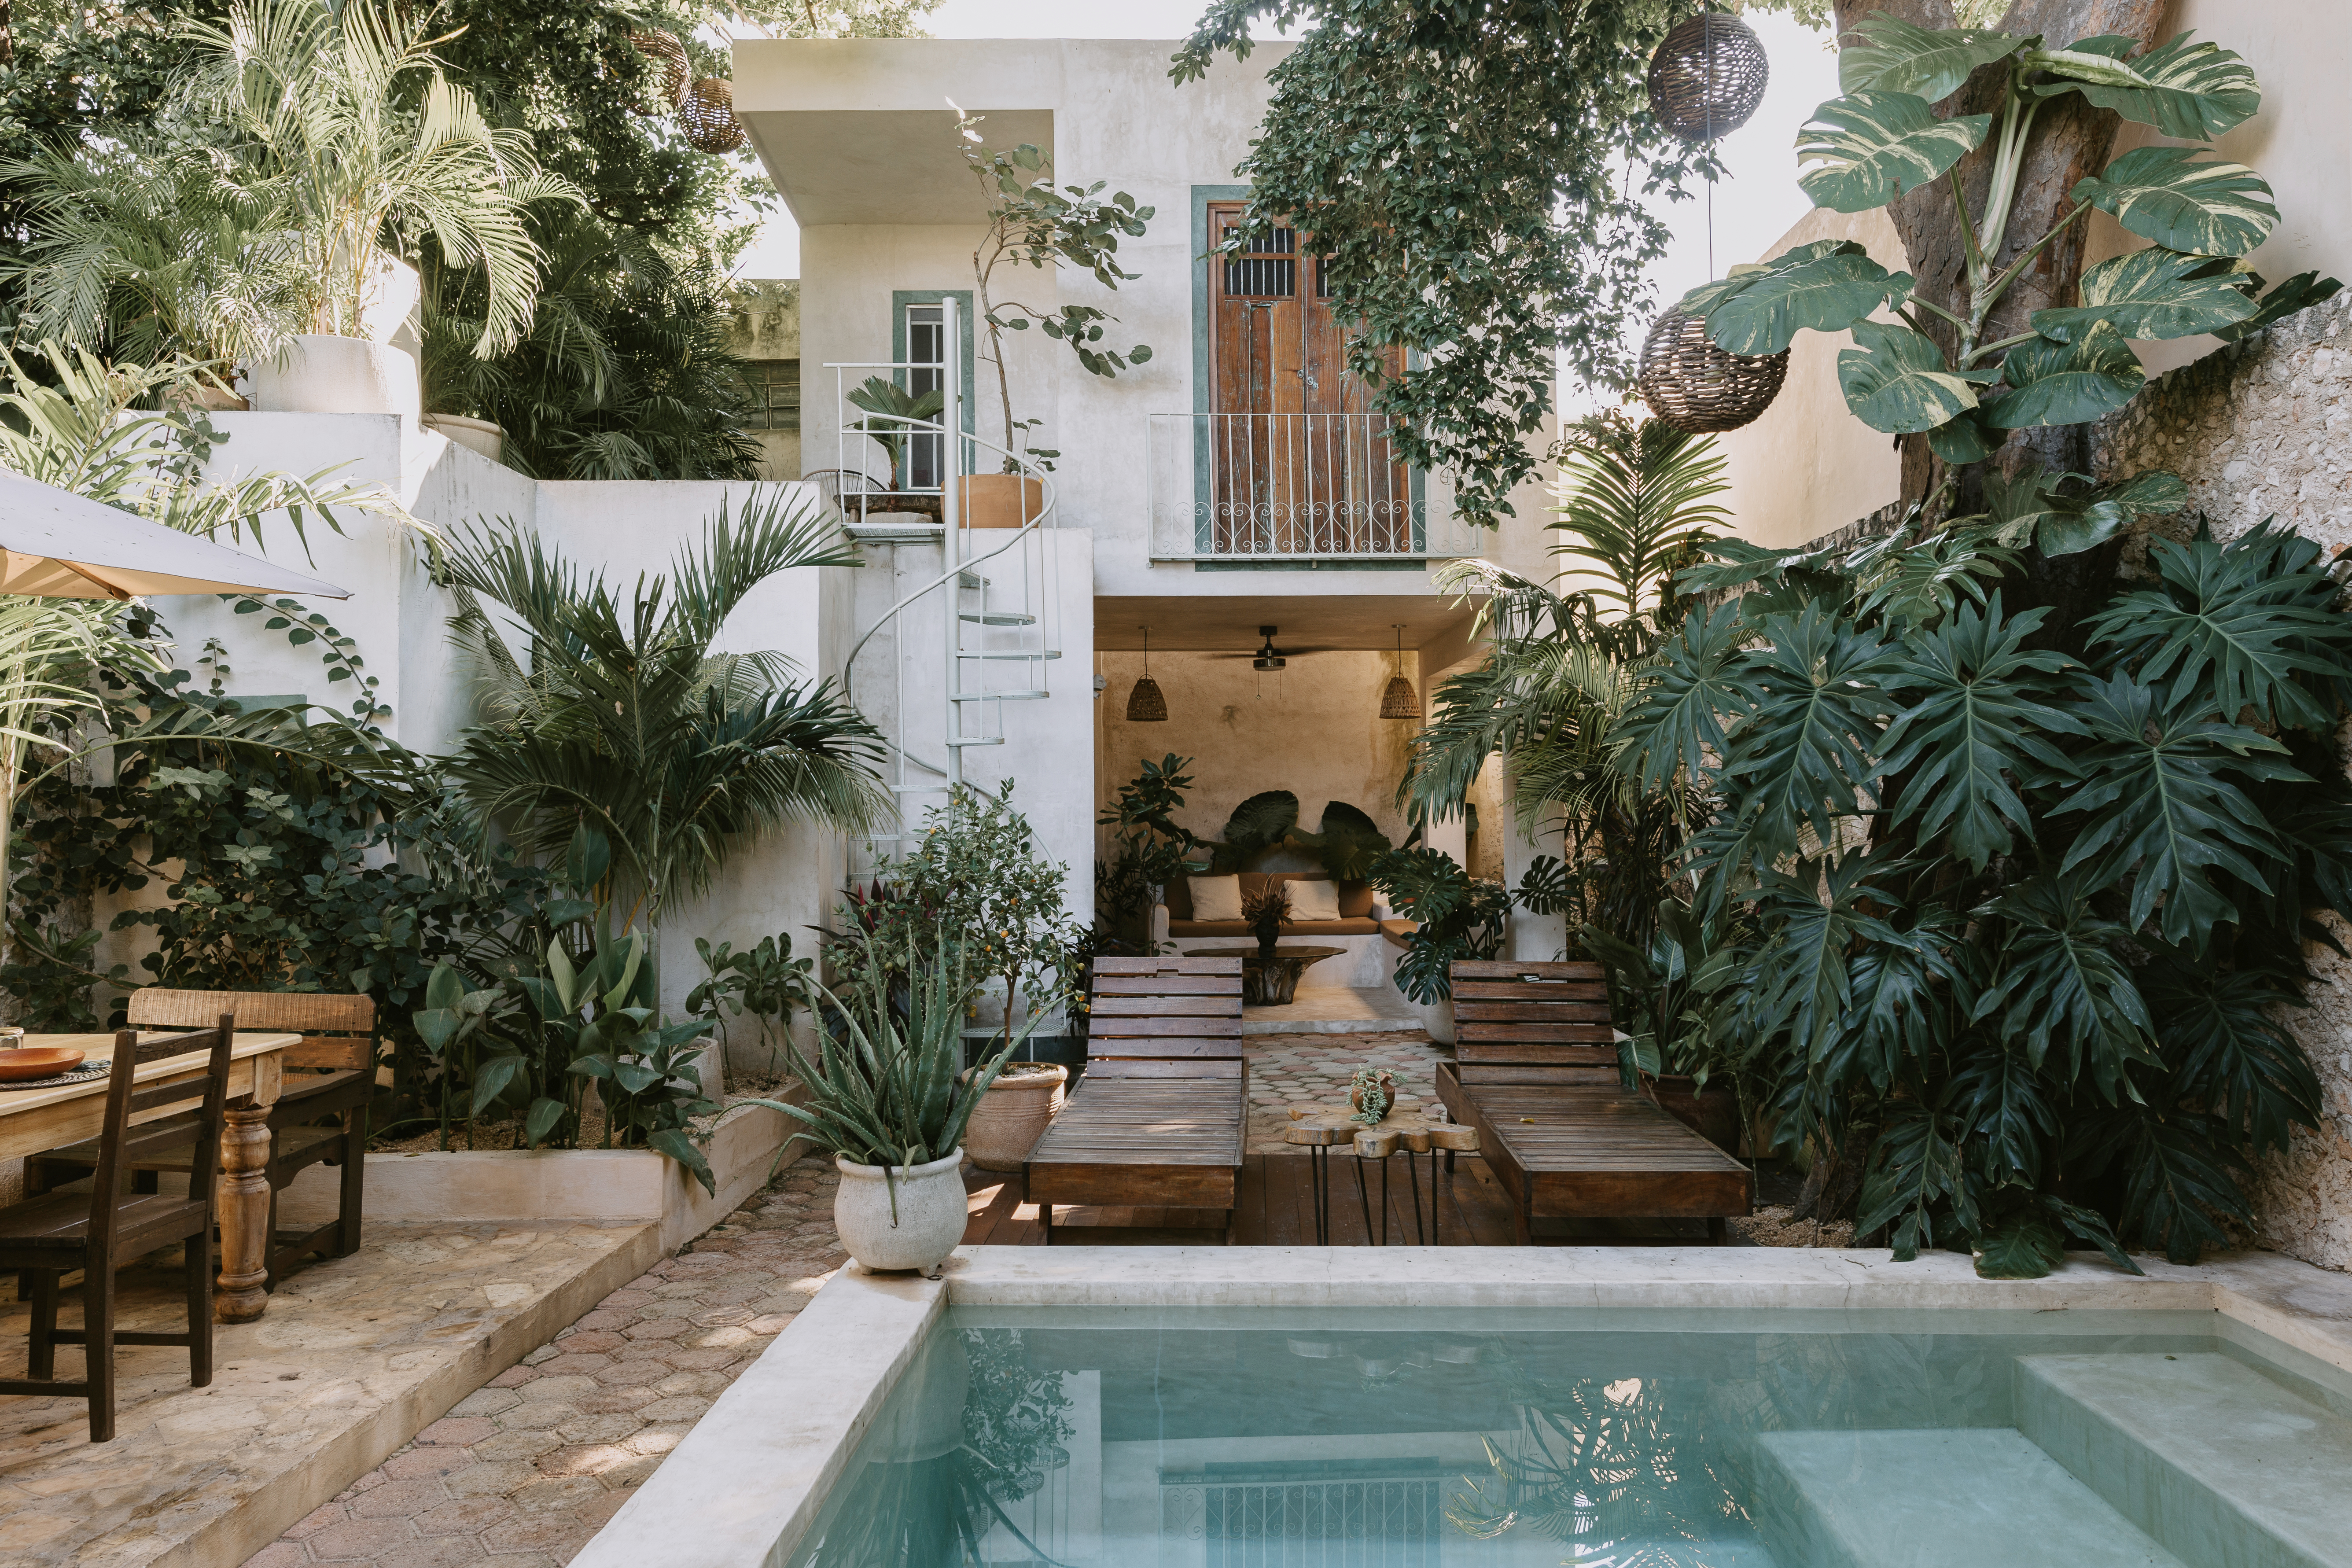 Dit zijn de mooiste vakantieplekjes in Mexico, geïnspireerd op het nieuwe seizoen van Wie Is De Mol?